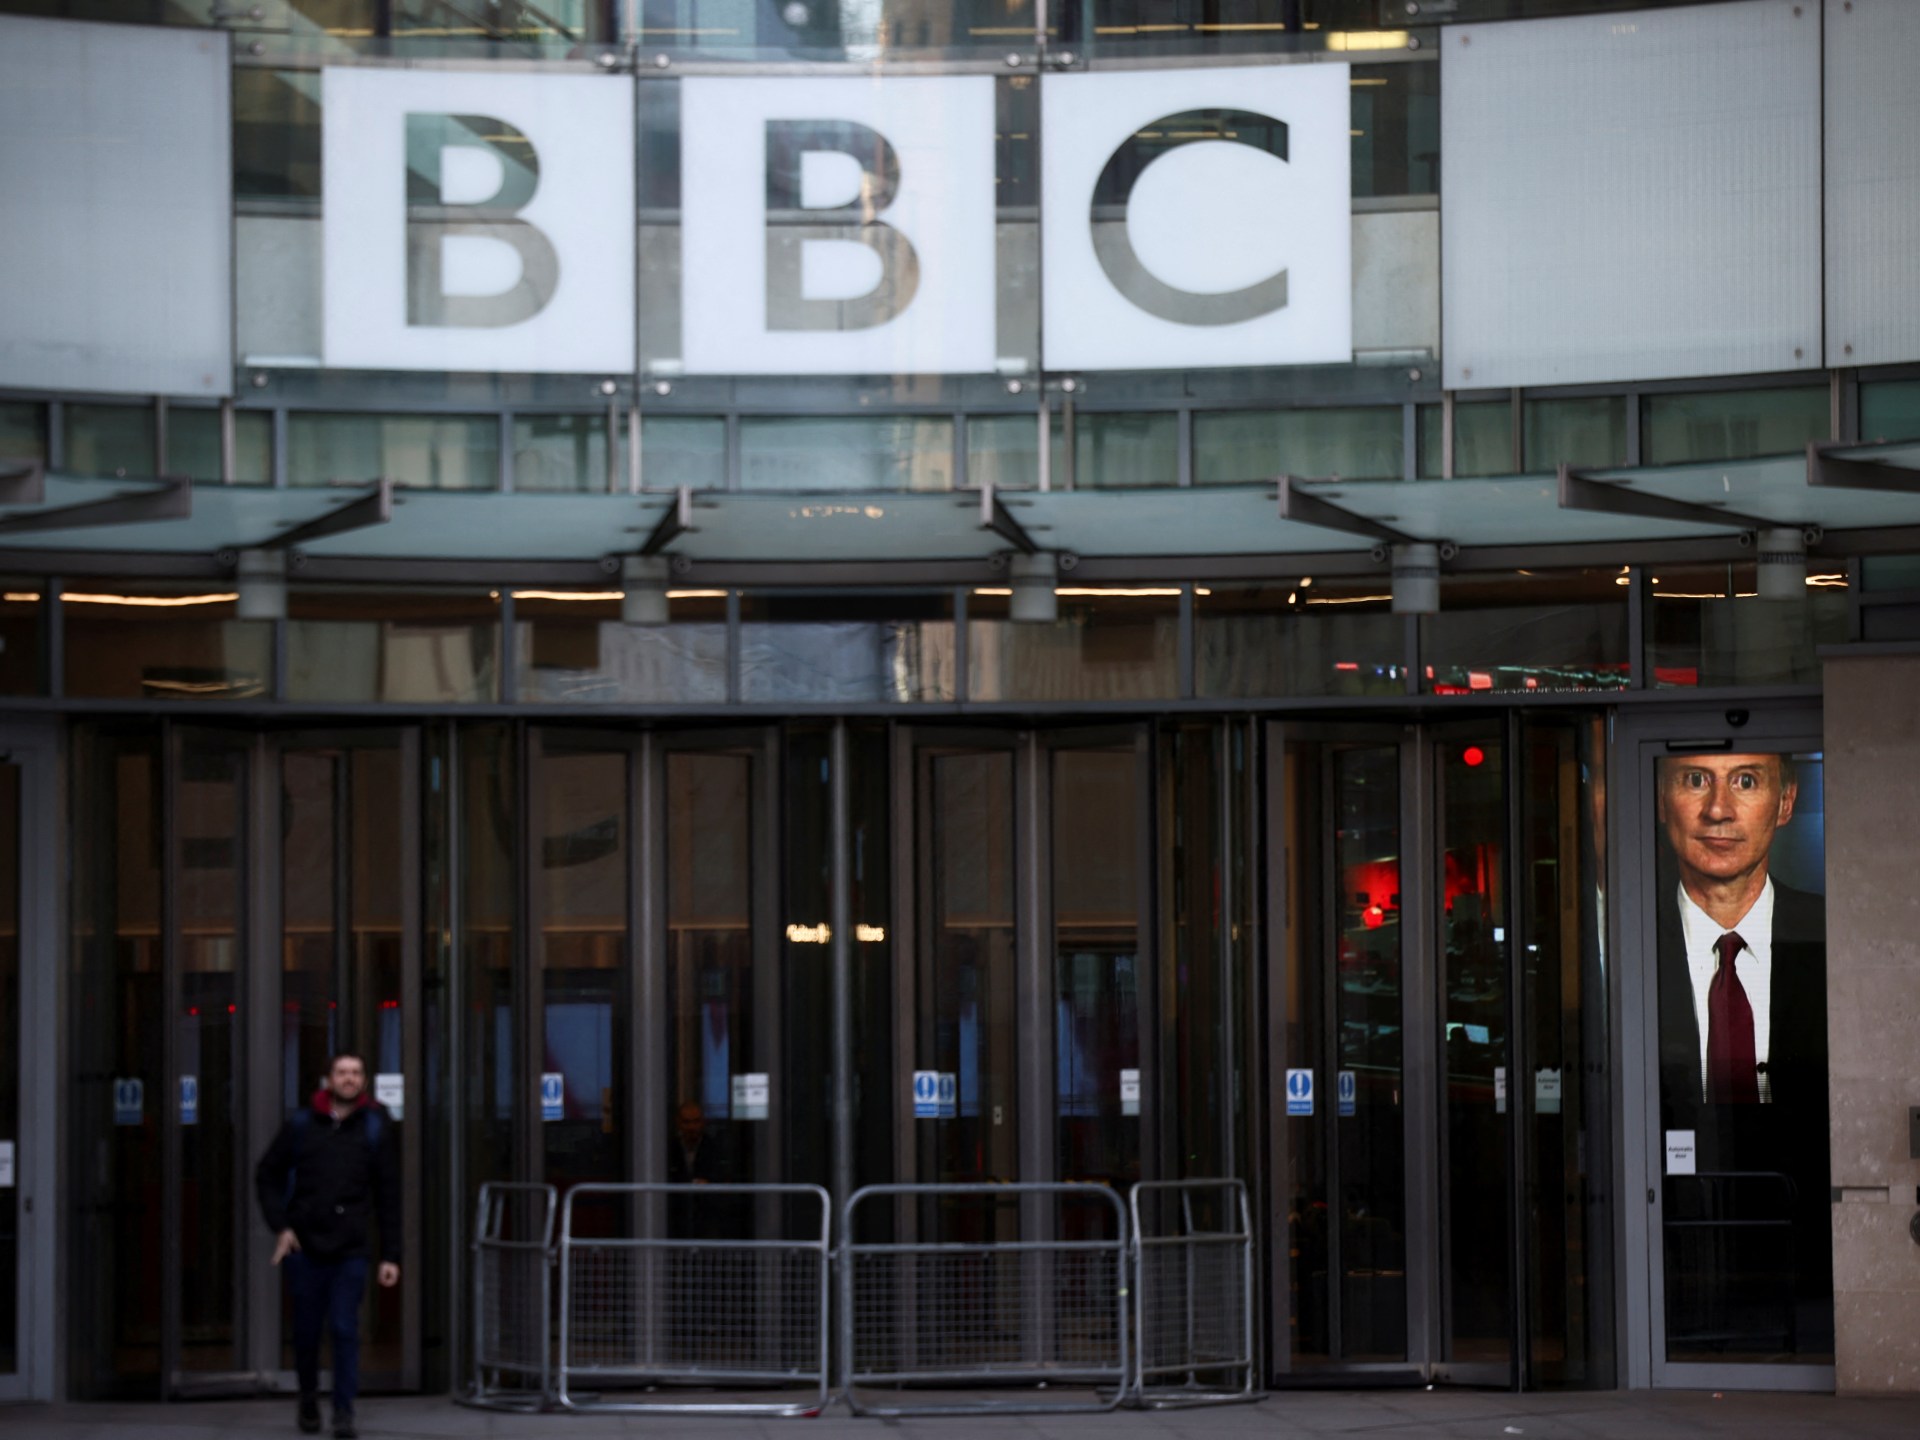 apretado Matón Presunción BBC Arabic radio goes off air after 85 years | Media News | Al Jazeera